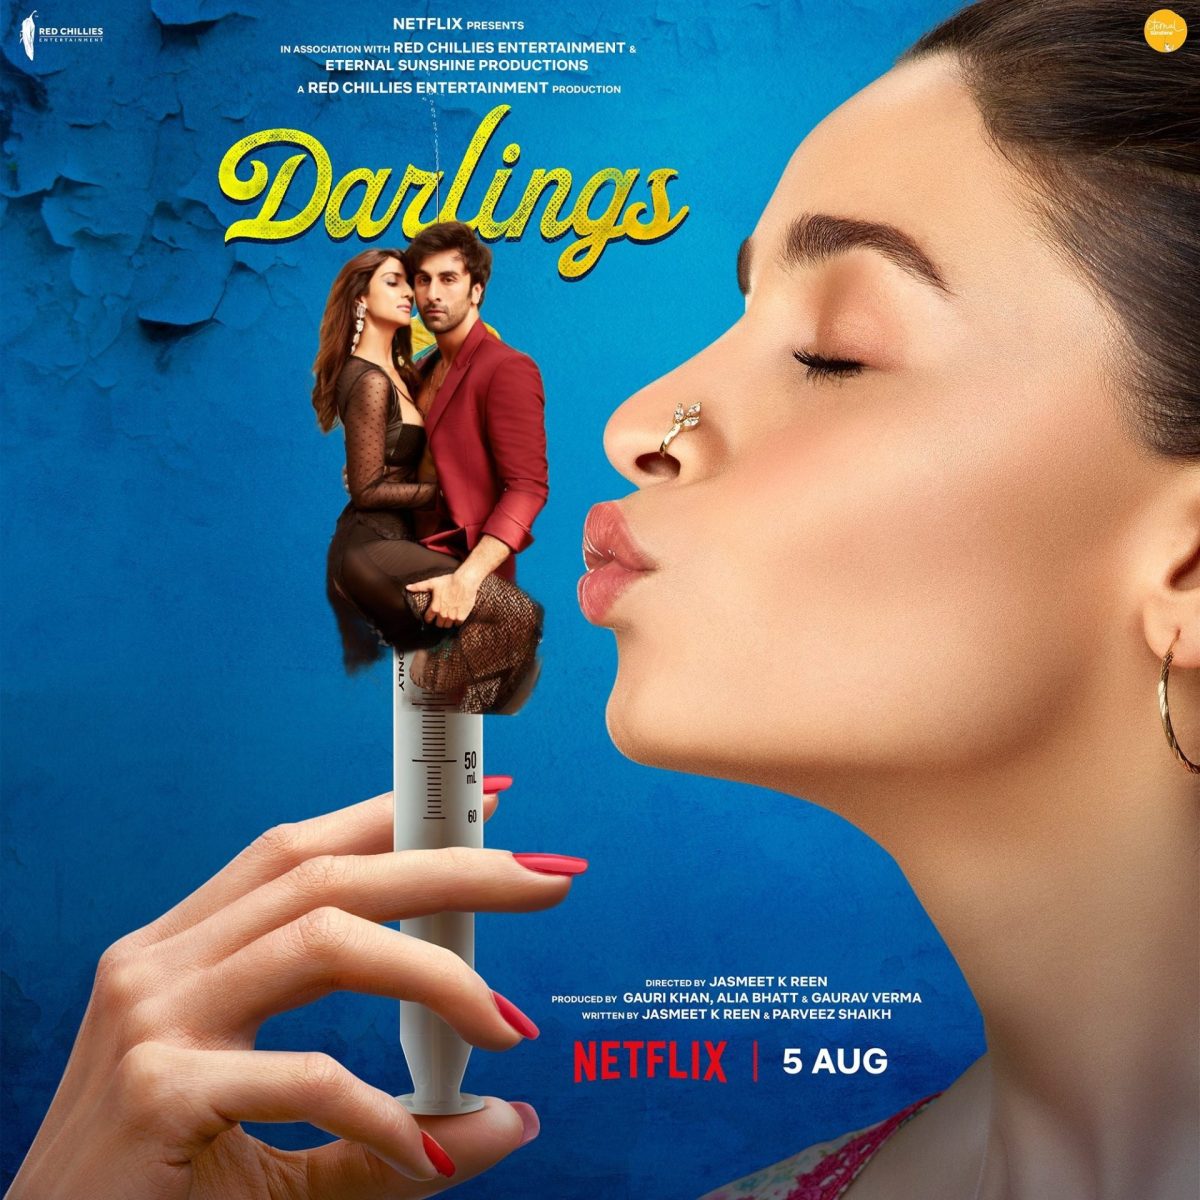 Alia Bhatt's Darlings: आलिया भट्ट की फिल्म 'डार्लिंग्स' का टीजर जारी, कॉमेडी के साथ डार्क ह्यूमर